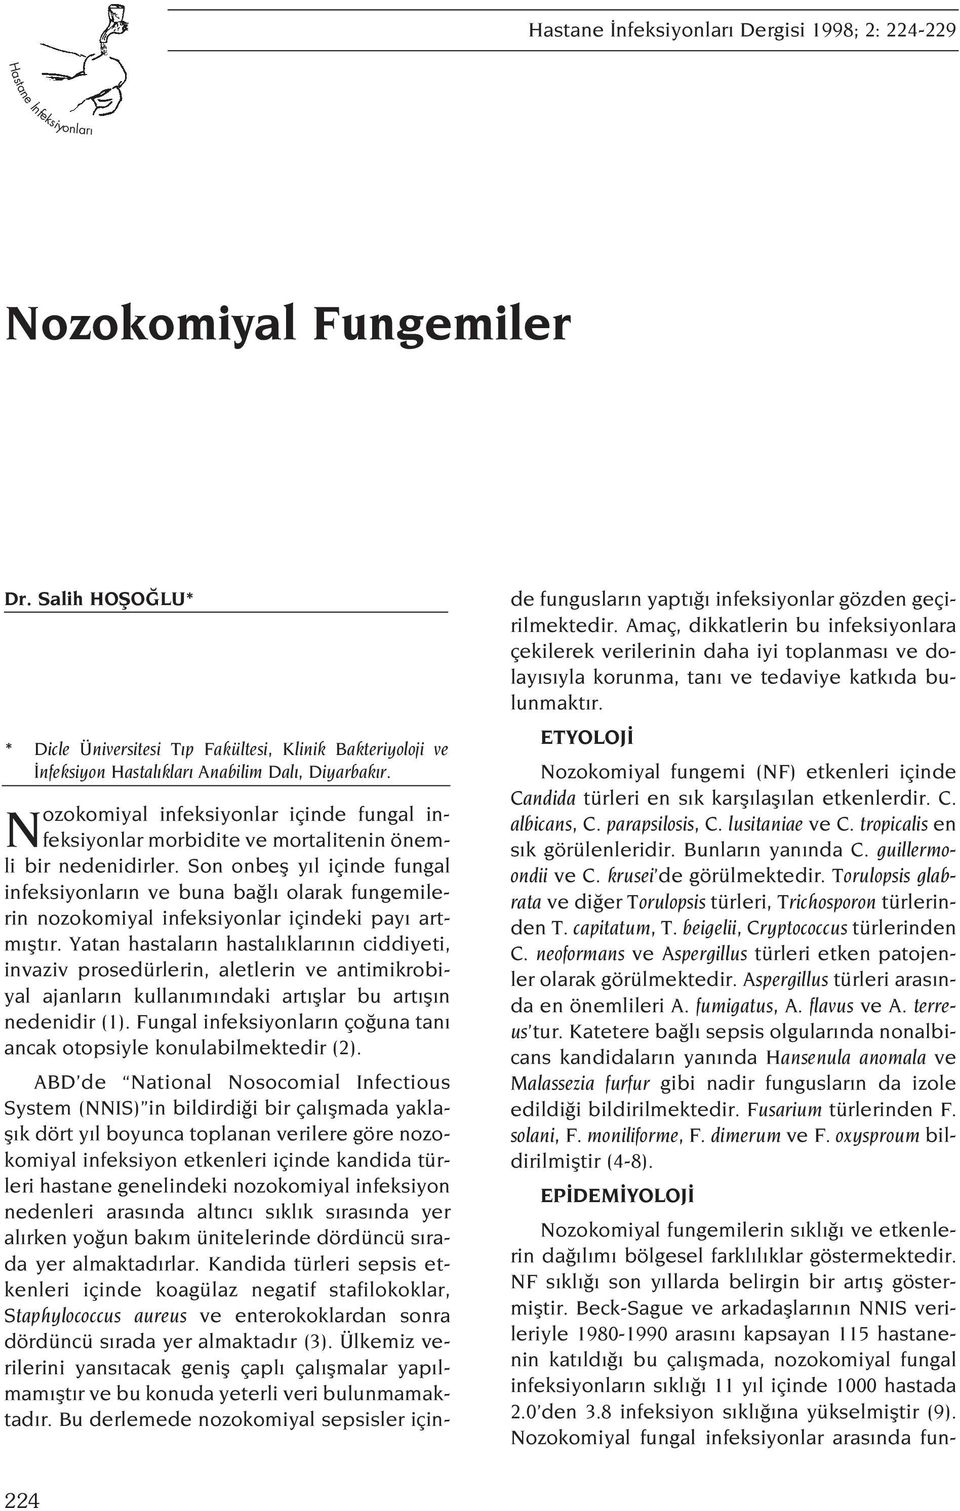 Nozokomiyal infeksiyonlar içinde fungal infeksiyonlar morbidite ve mortalitenin önemli bir nedenidirler.